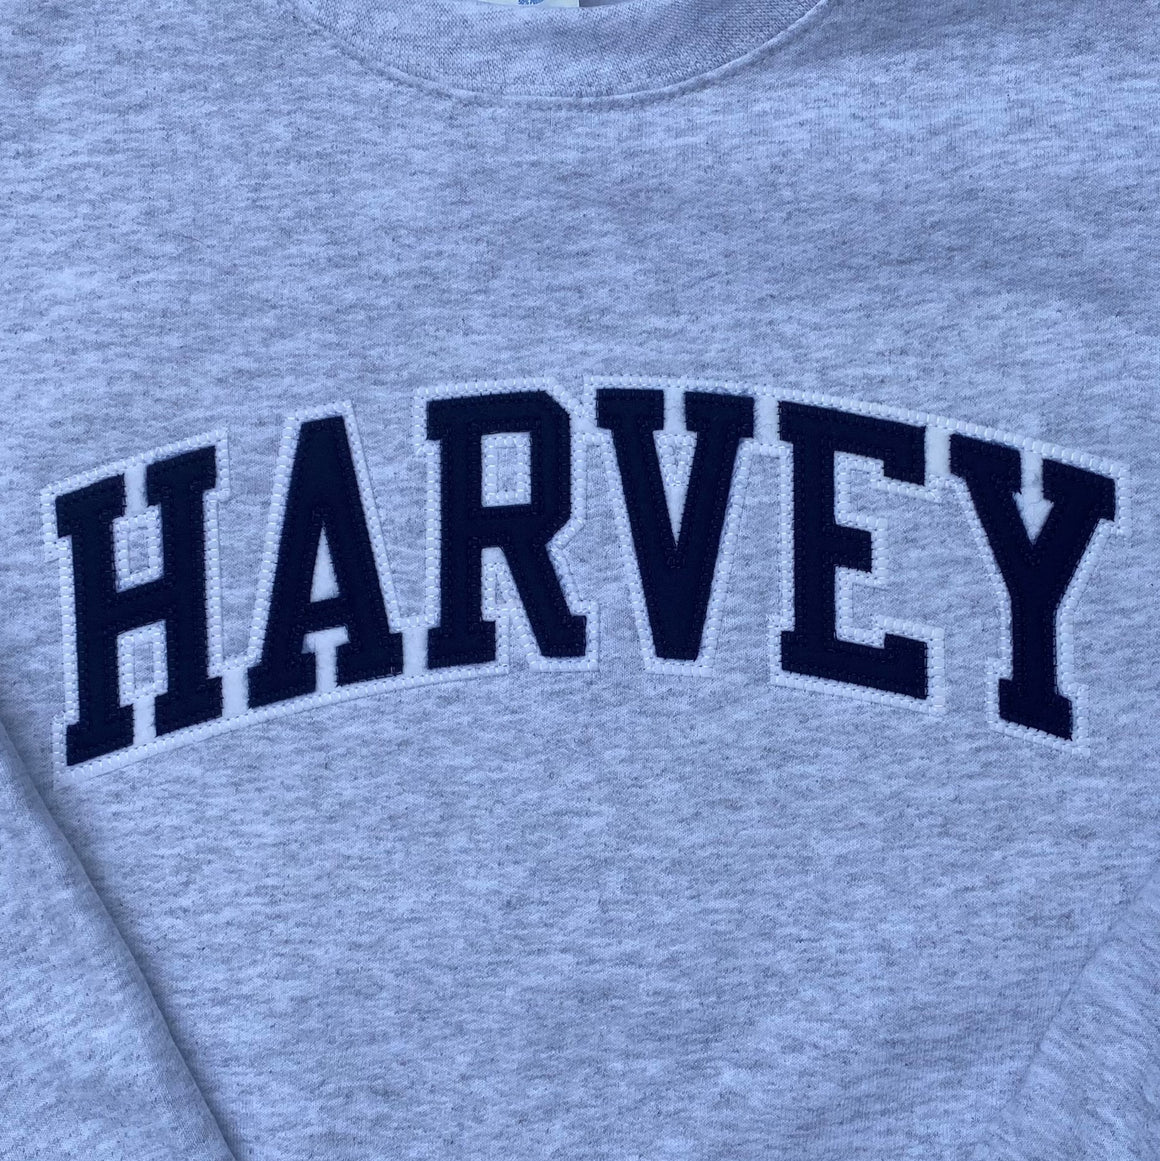 Harvey School Champion Vintage Applique Arc Logo Crewneck Sweatshirt